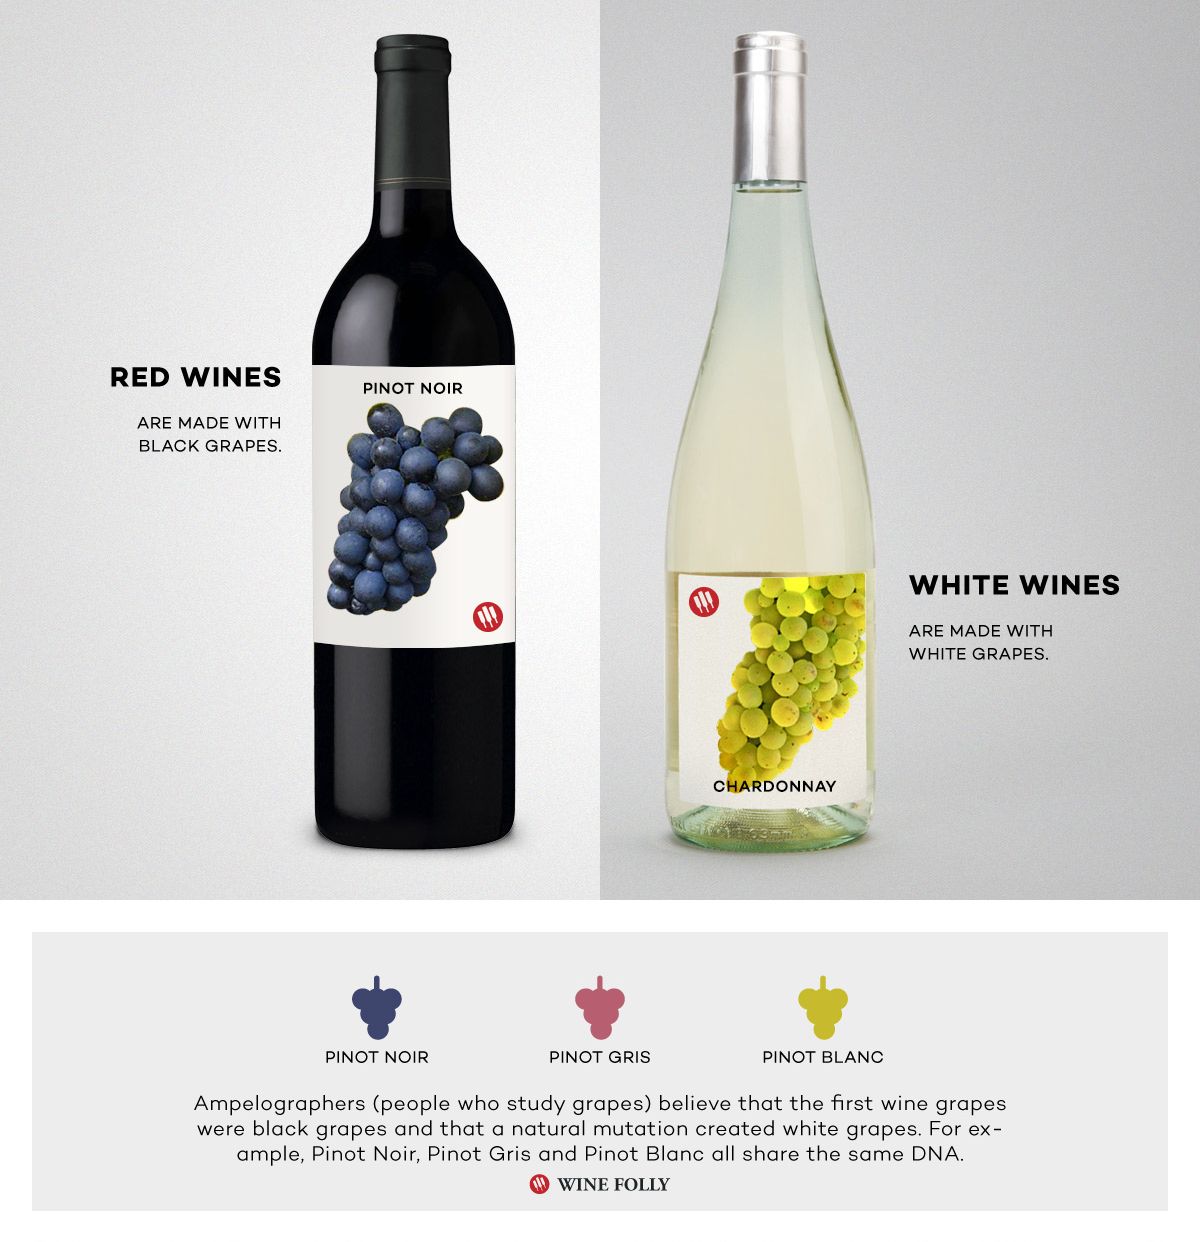 Raudonasis vynas ir baltasis vynas „Pinot Noir“ ir „Chardonnay“ palyginimas pagal „Wine Folly“